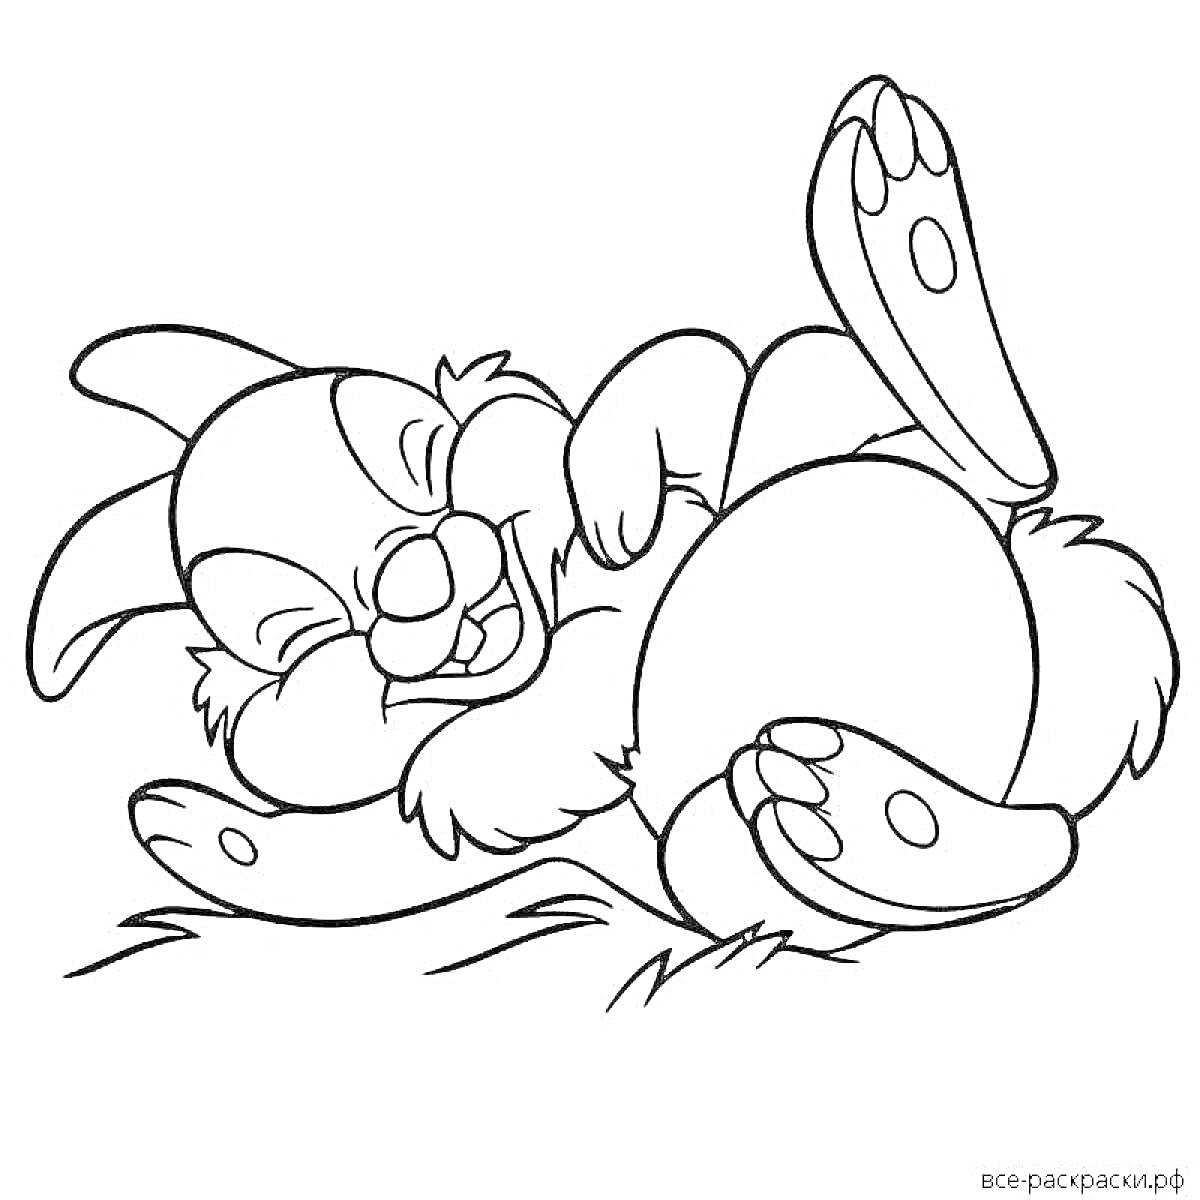 Кролик Бонзо лежащий на земле, смеющийся с поднятой лапой